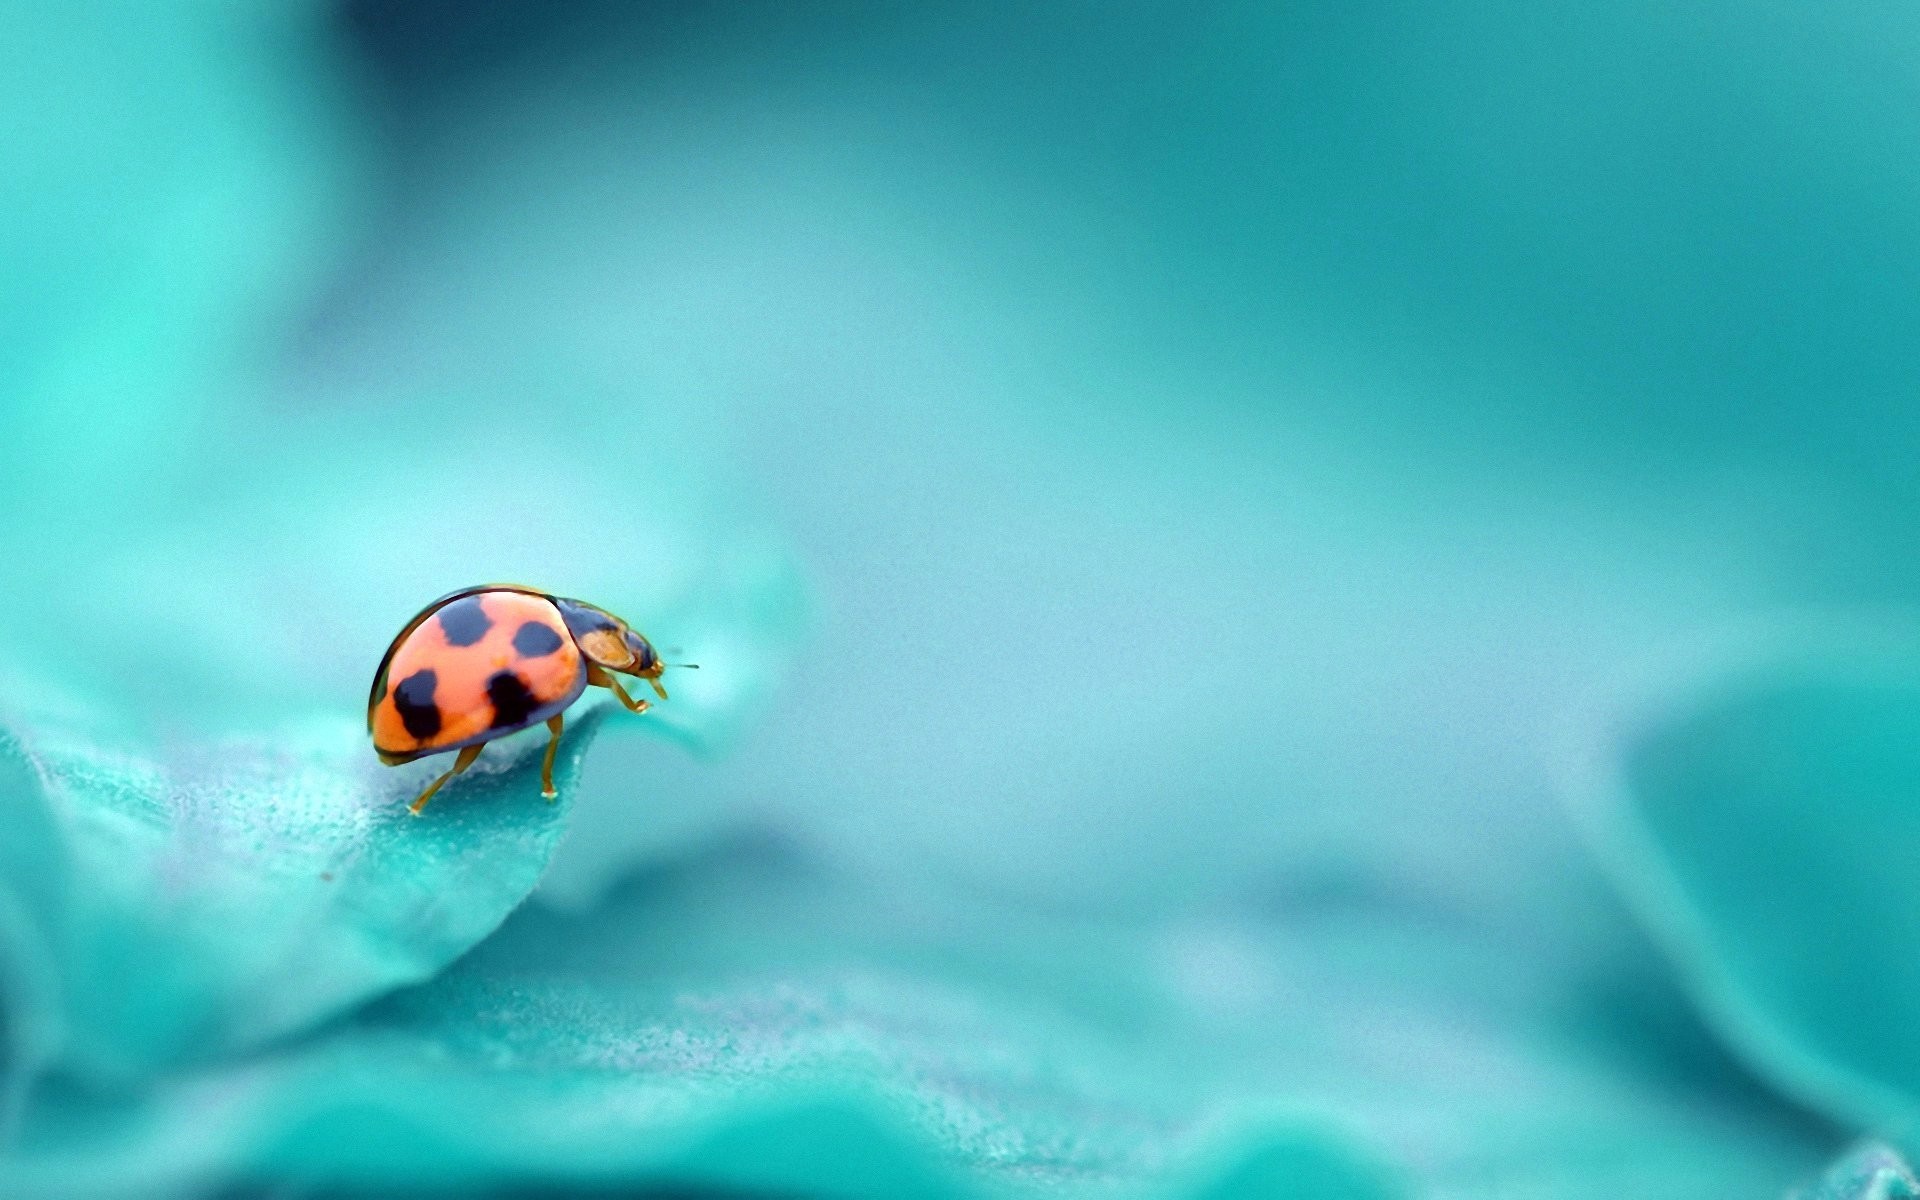 Image: Ladybug, spots, macro, turquoise background